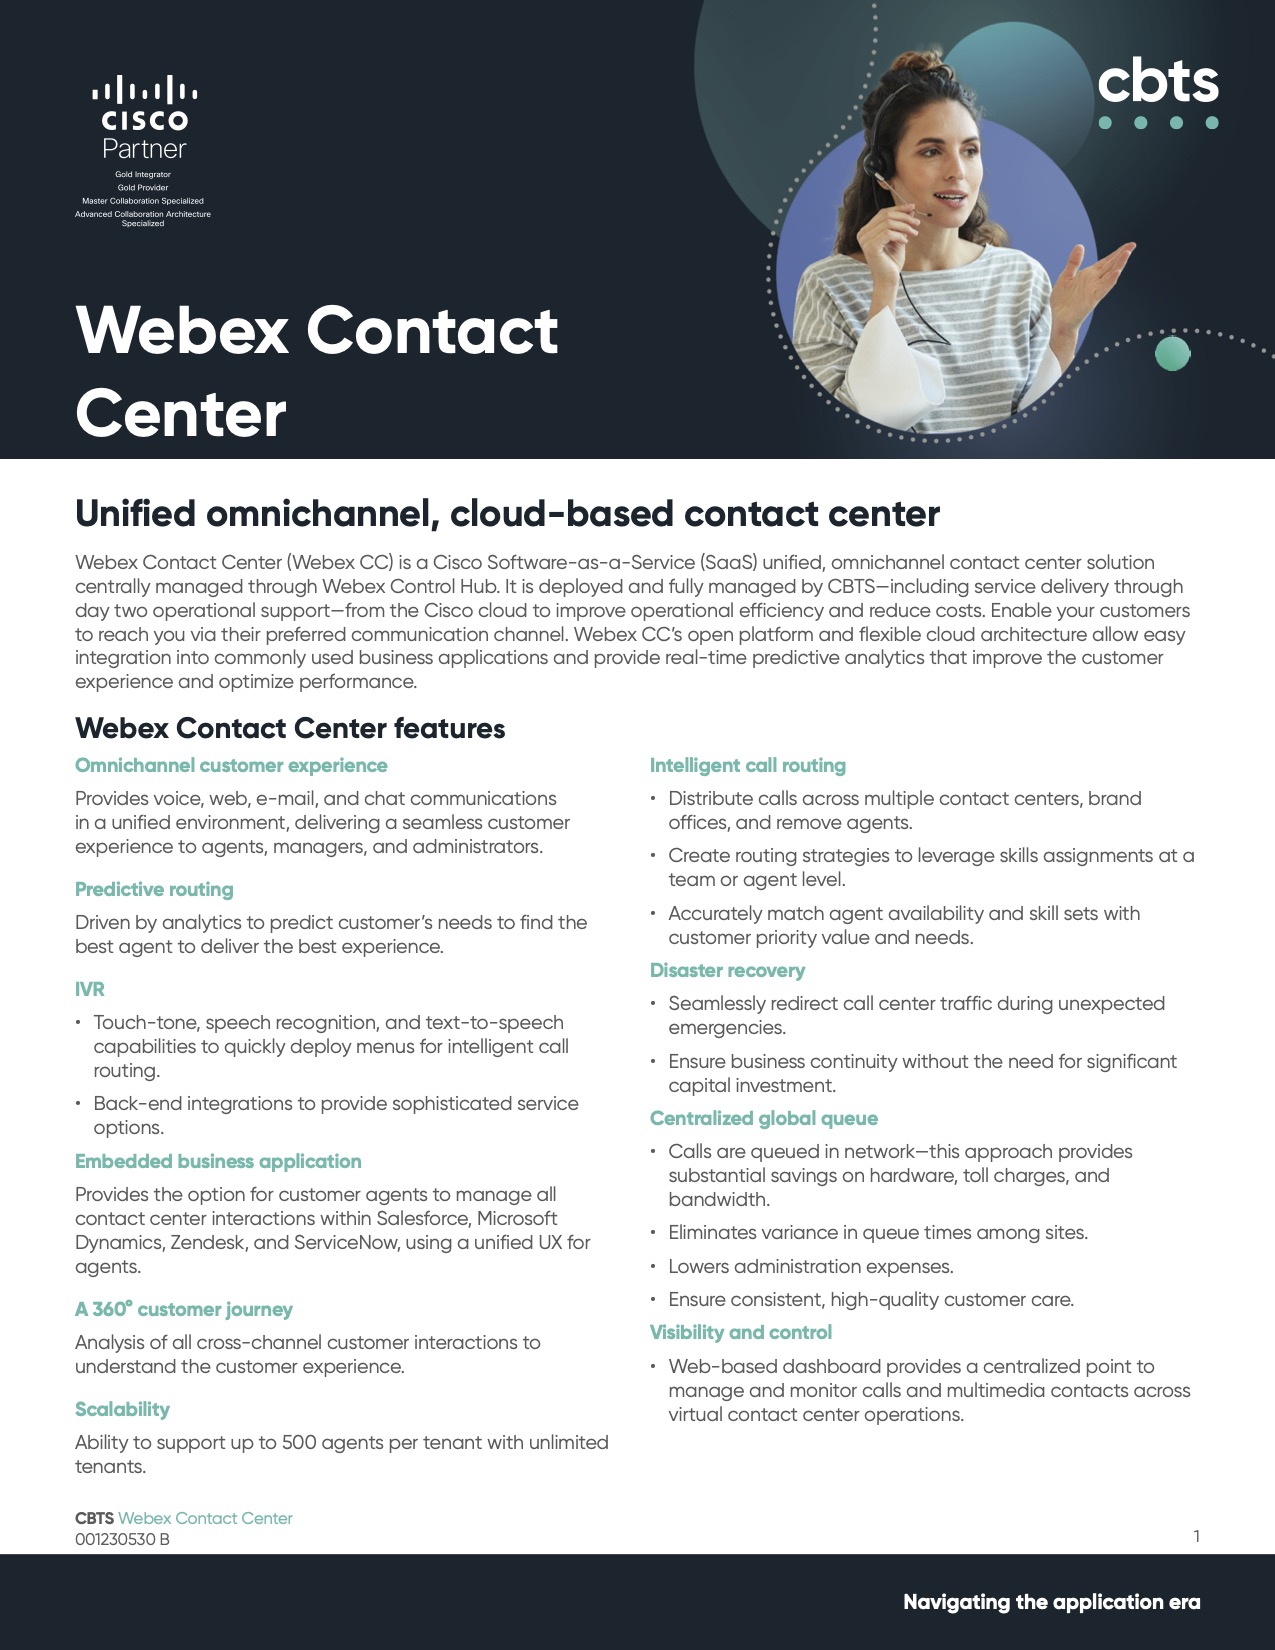 CBTS_Webex_Contact_Center_01-1